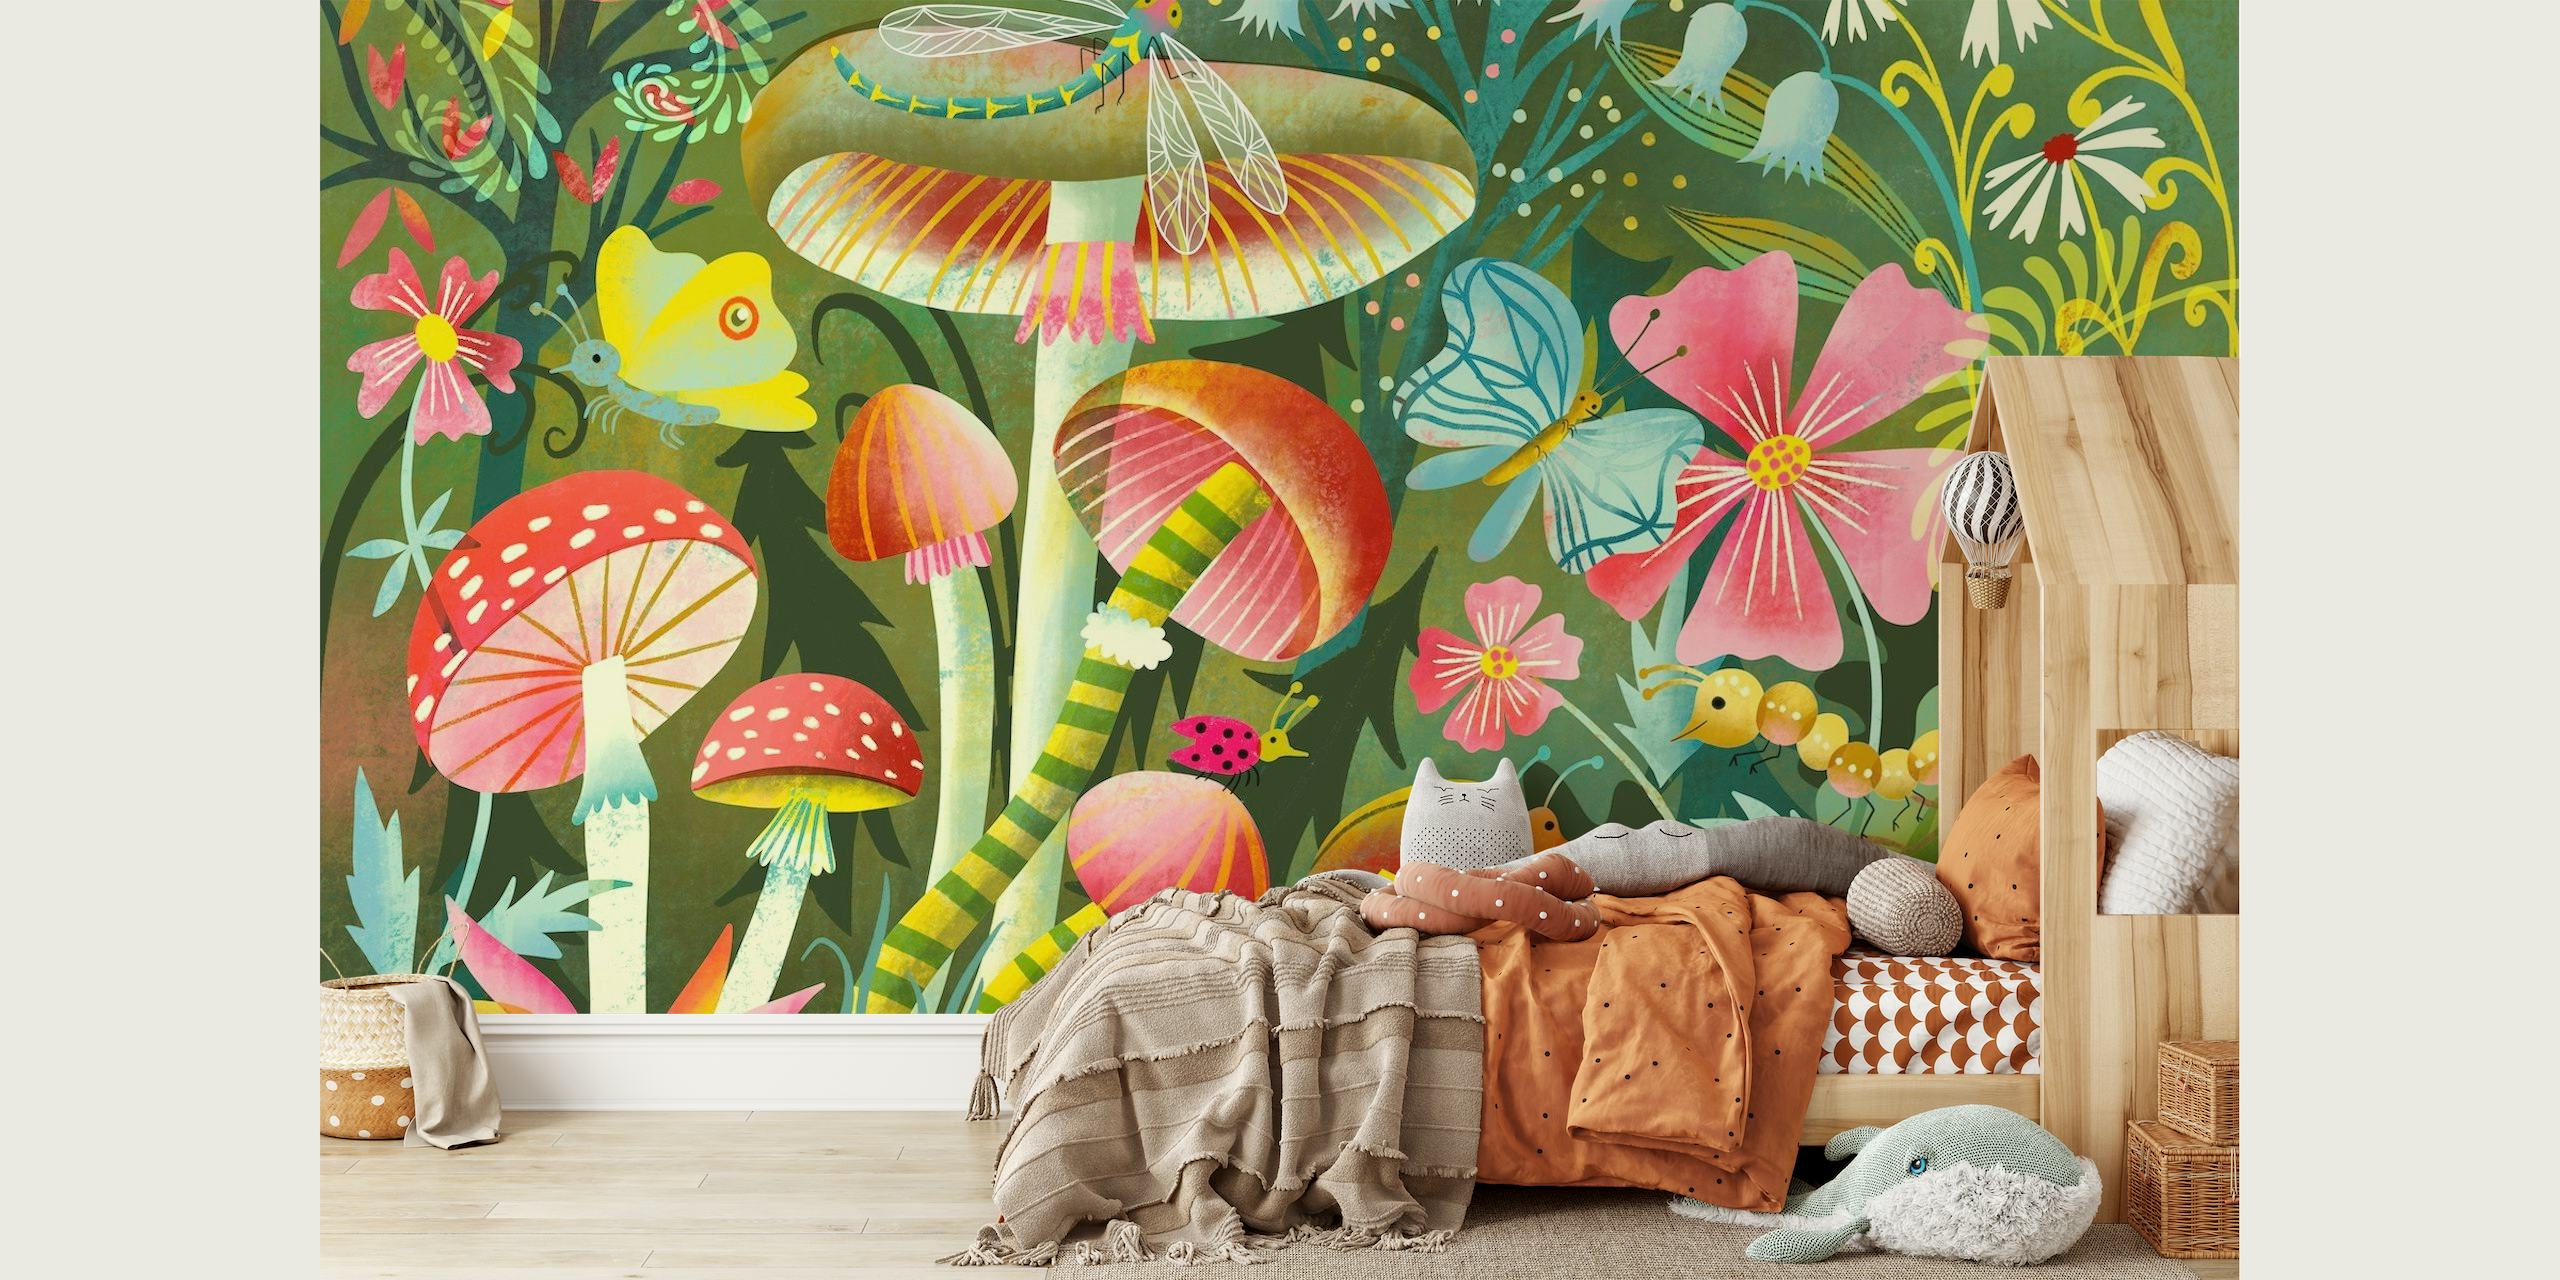 Magical little forest world wallpaper